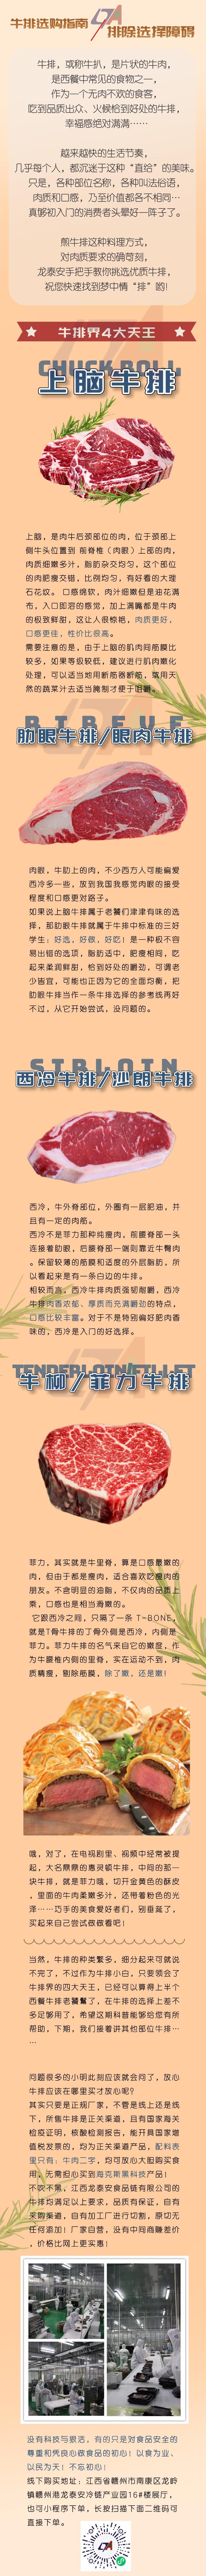 中国风饮品奶茶活动促销长图海报__2022-10-11+09_40_37.jpeg